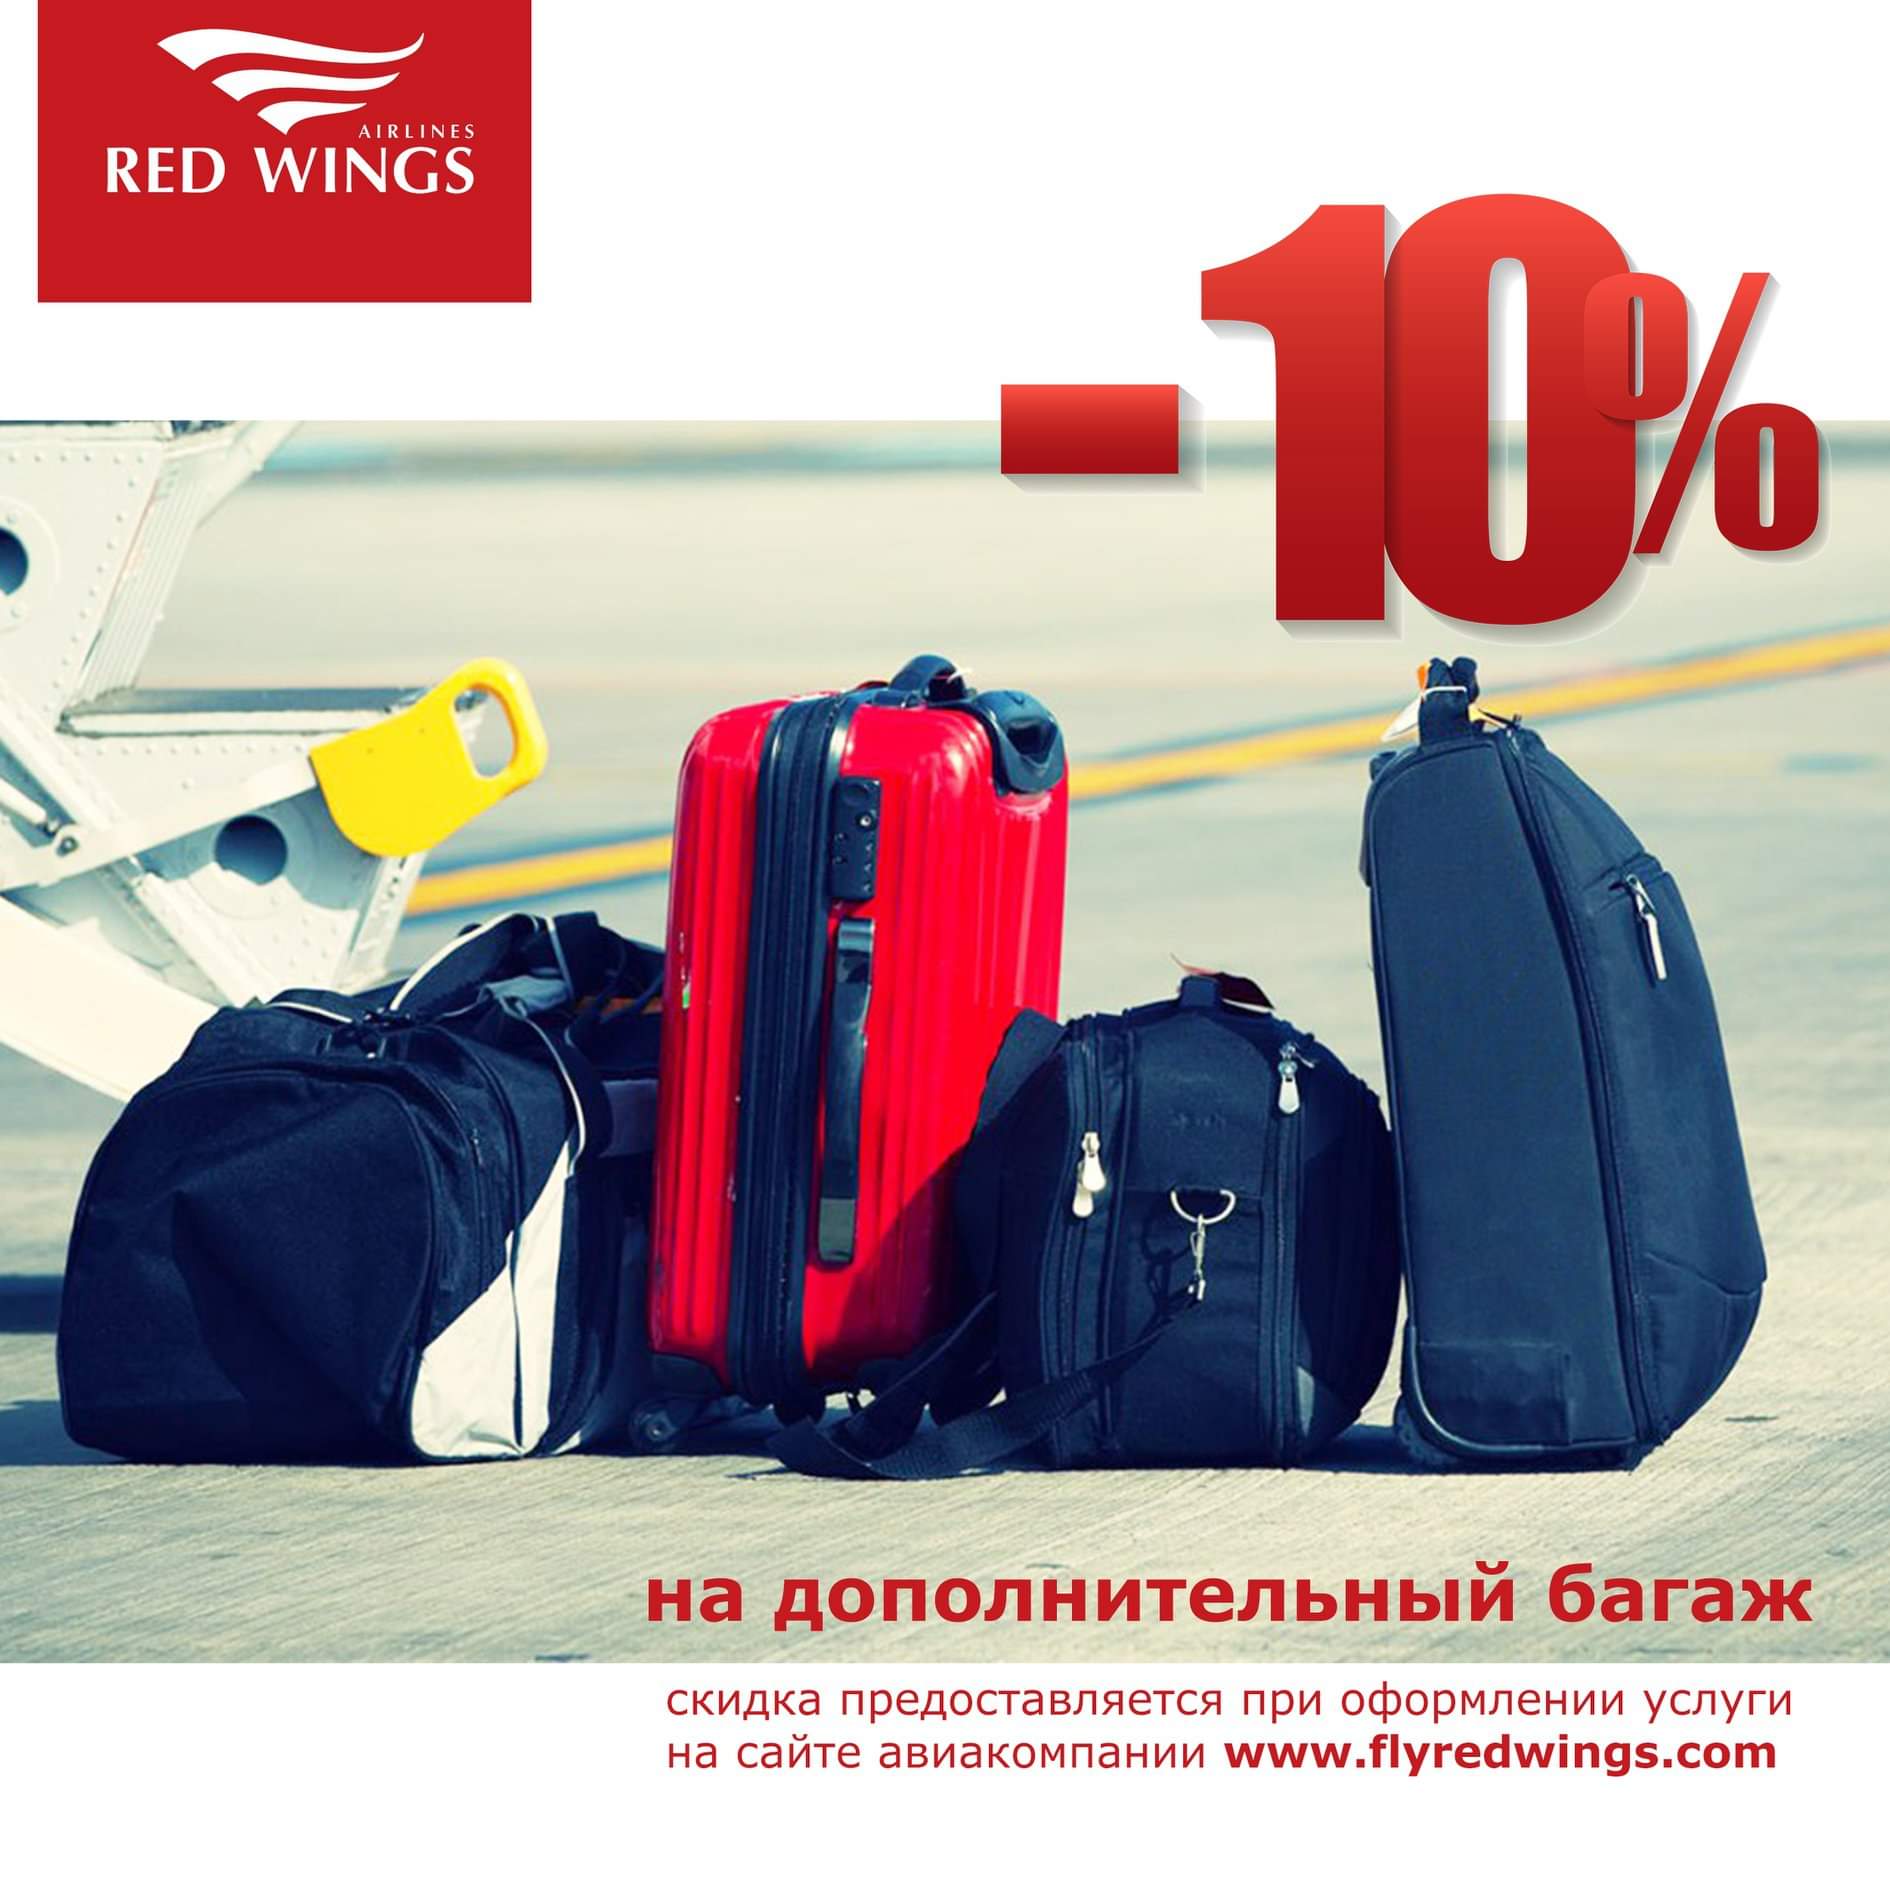 Red wings: ручная кладь и багаж, правила провоза вещей в авиакомпании ред вингс, допустимые размеры и вес